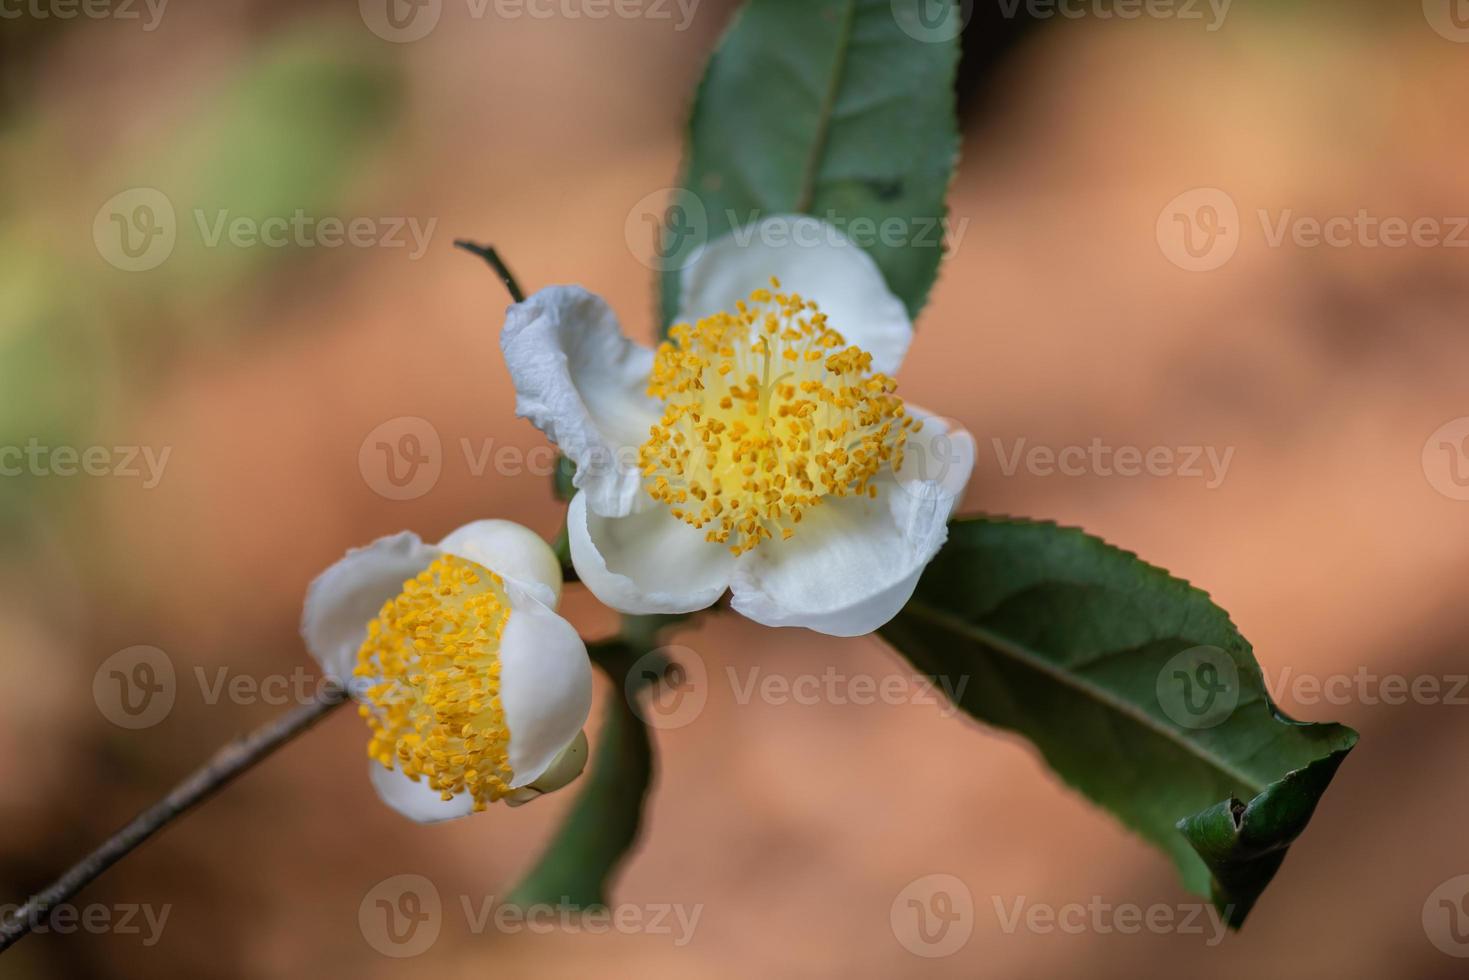 onder de zon staan theebloemen met witte bloemblaadjes en gele bloemkernen in het wilde theebos foto